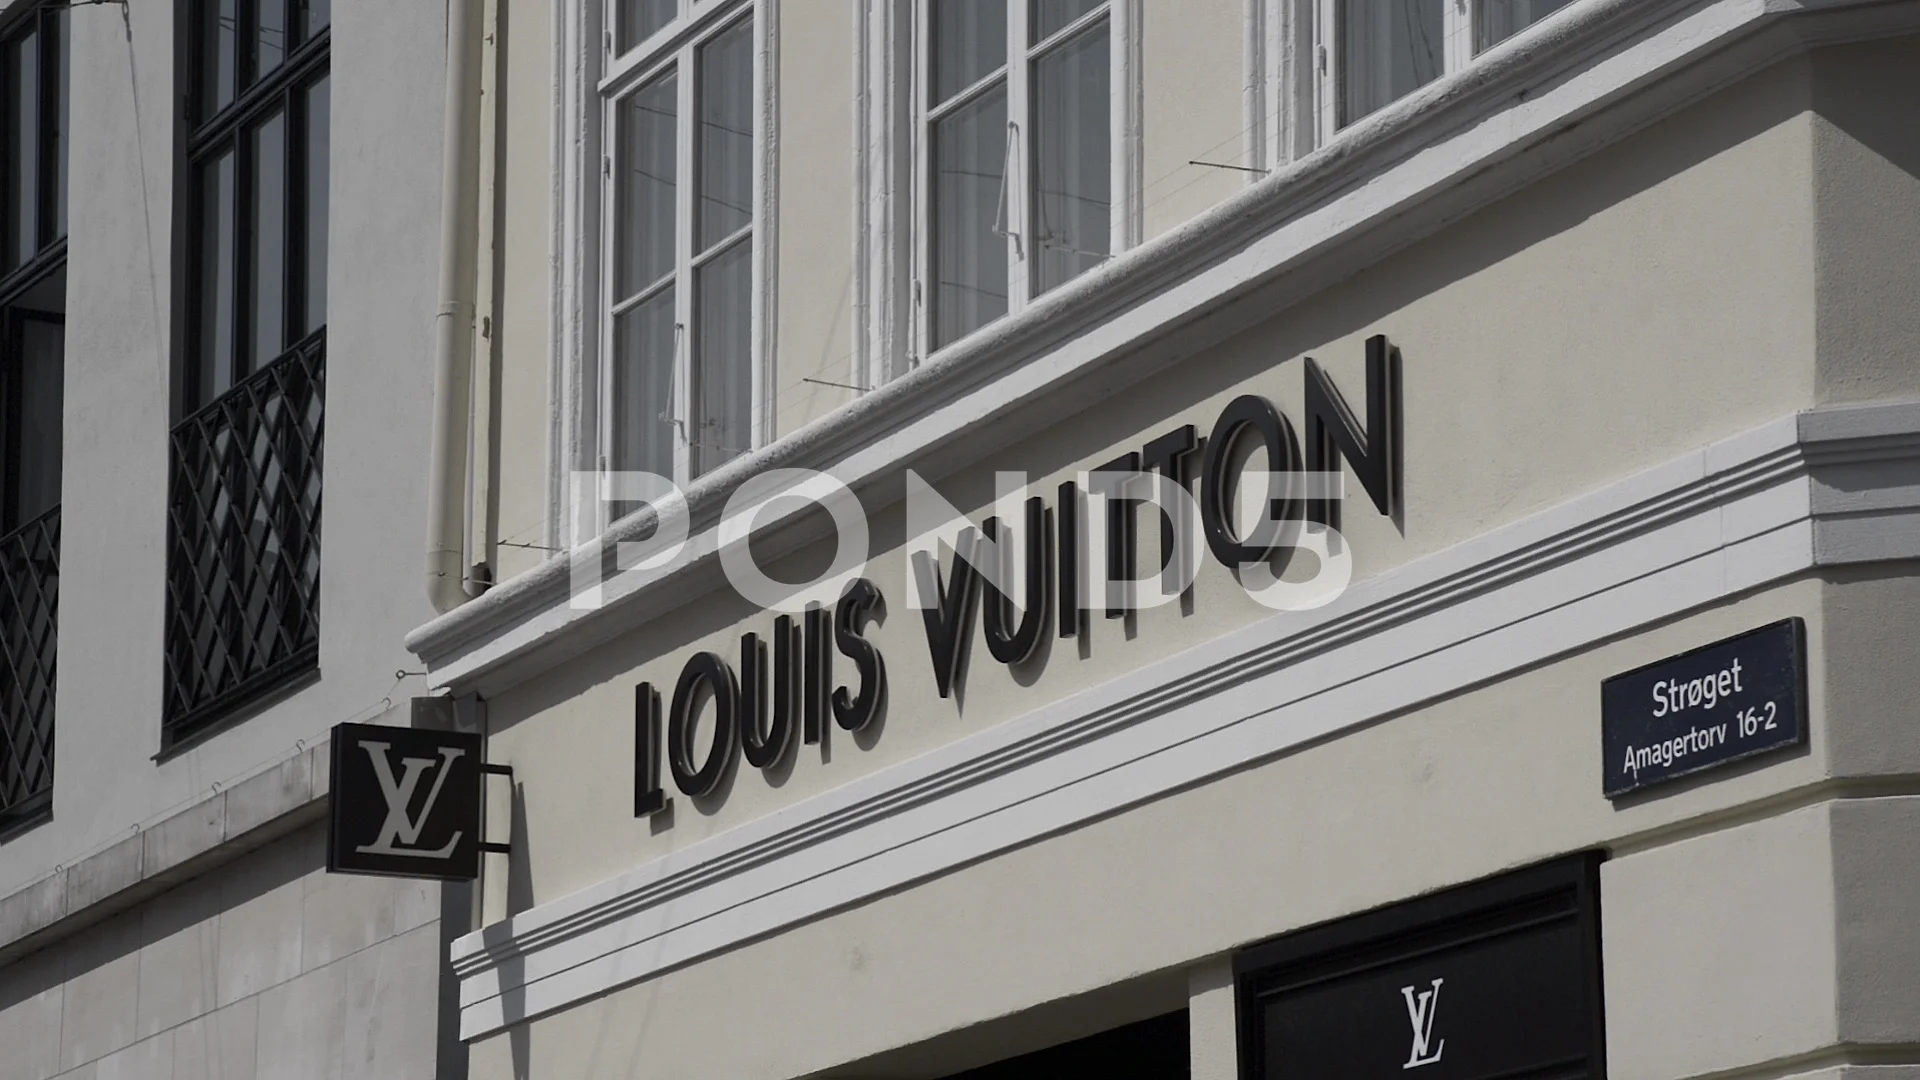 Louis Vuitton shop | Video | Pond5